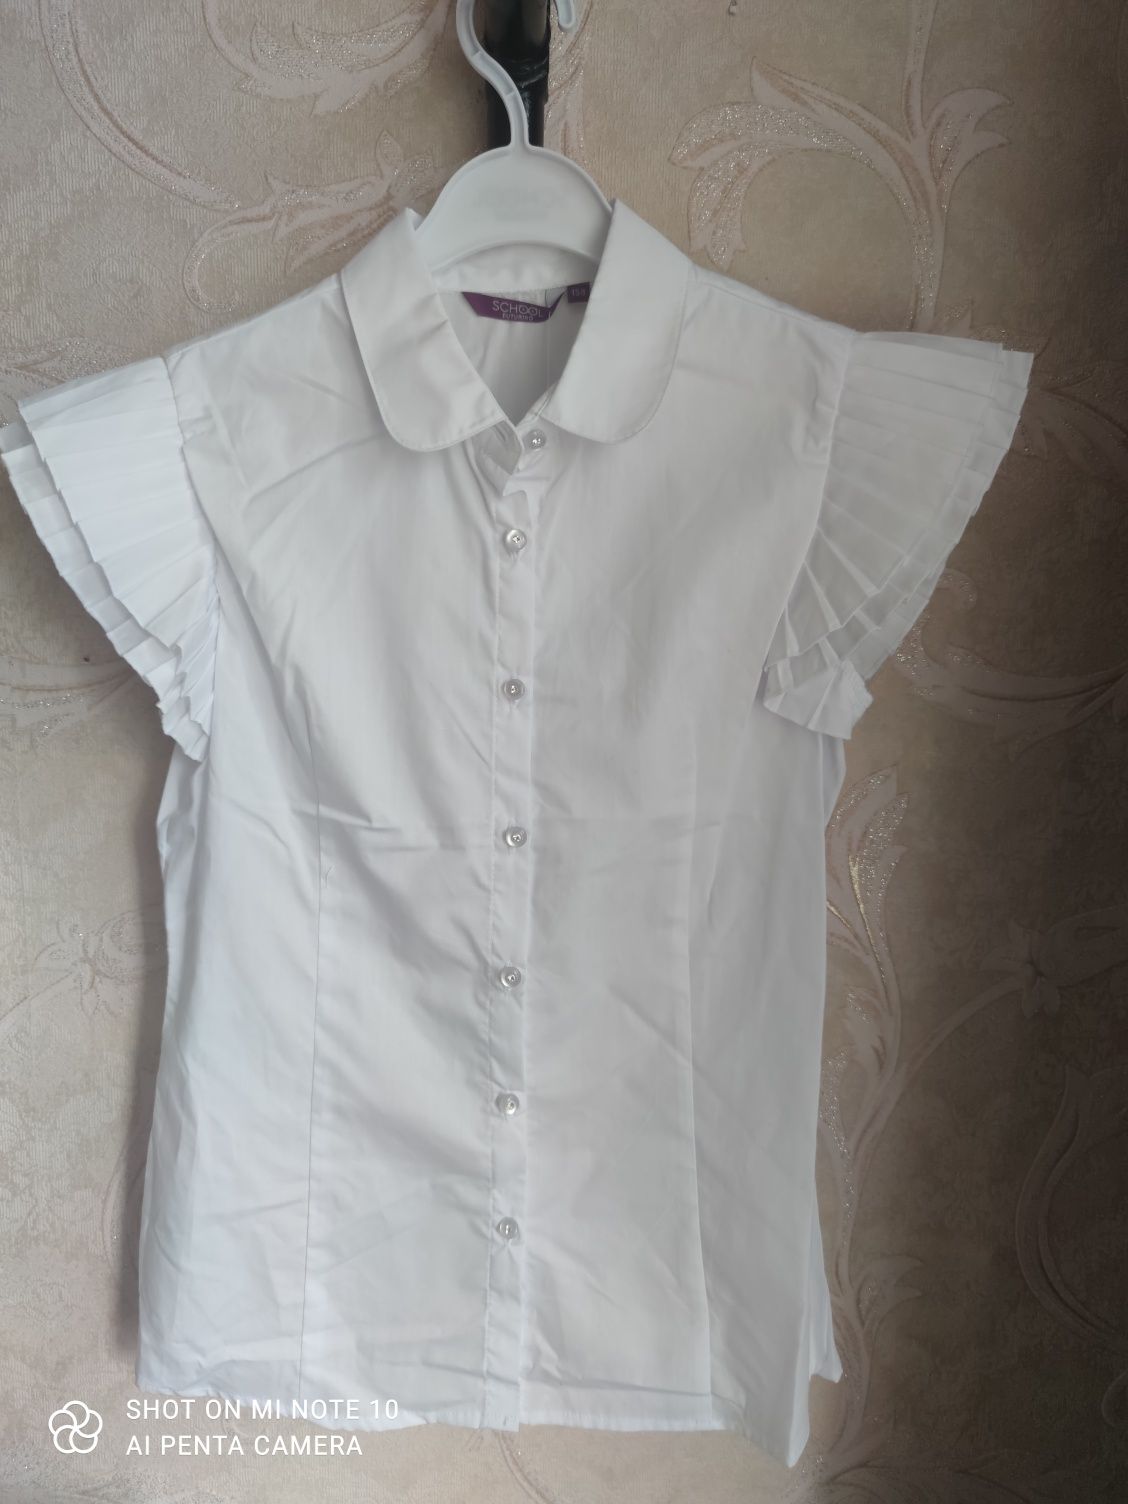 Продам белую блузку